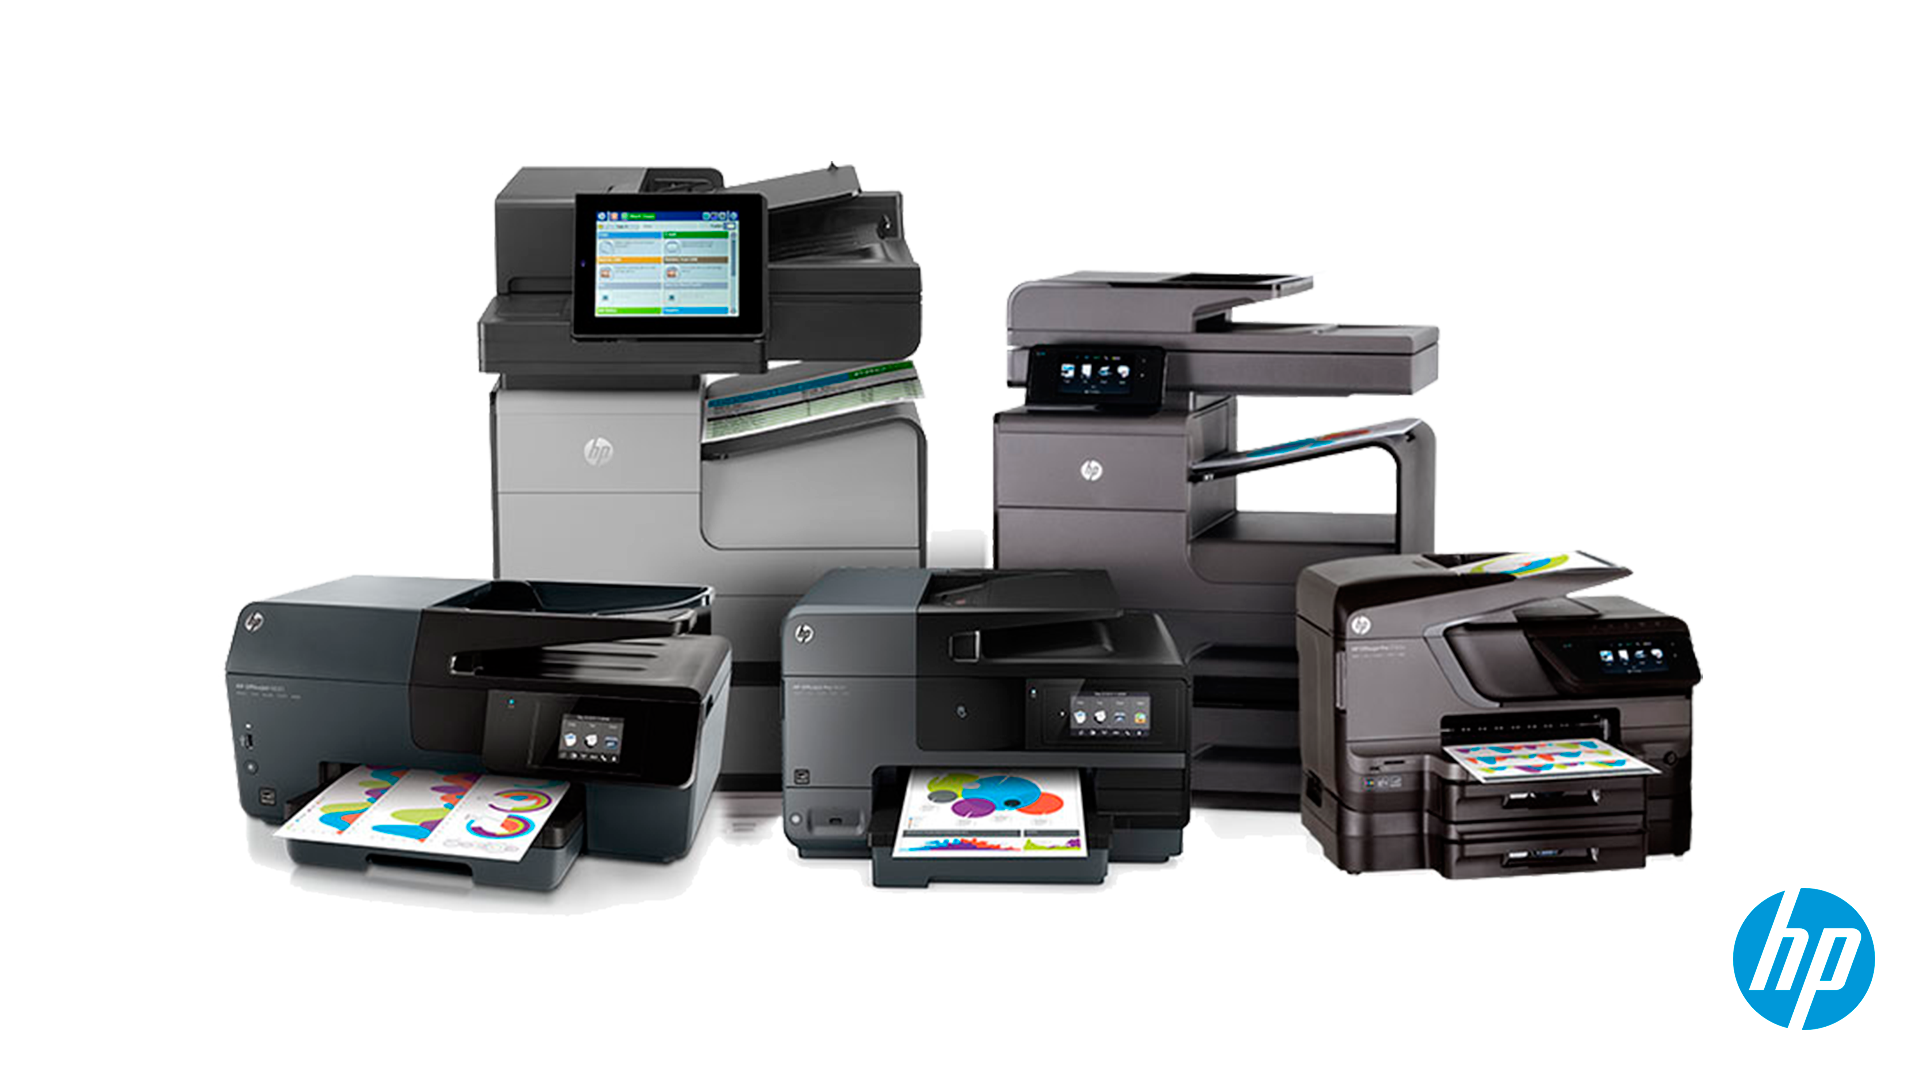 5 bons motivos para você comprar uma impressora HP - impressora HP toners-e cartuchos compatíveis